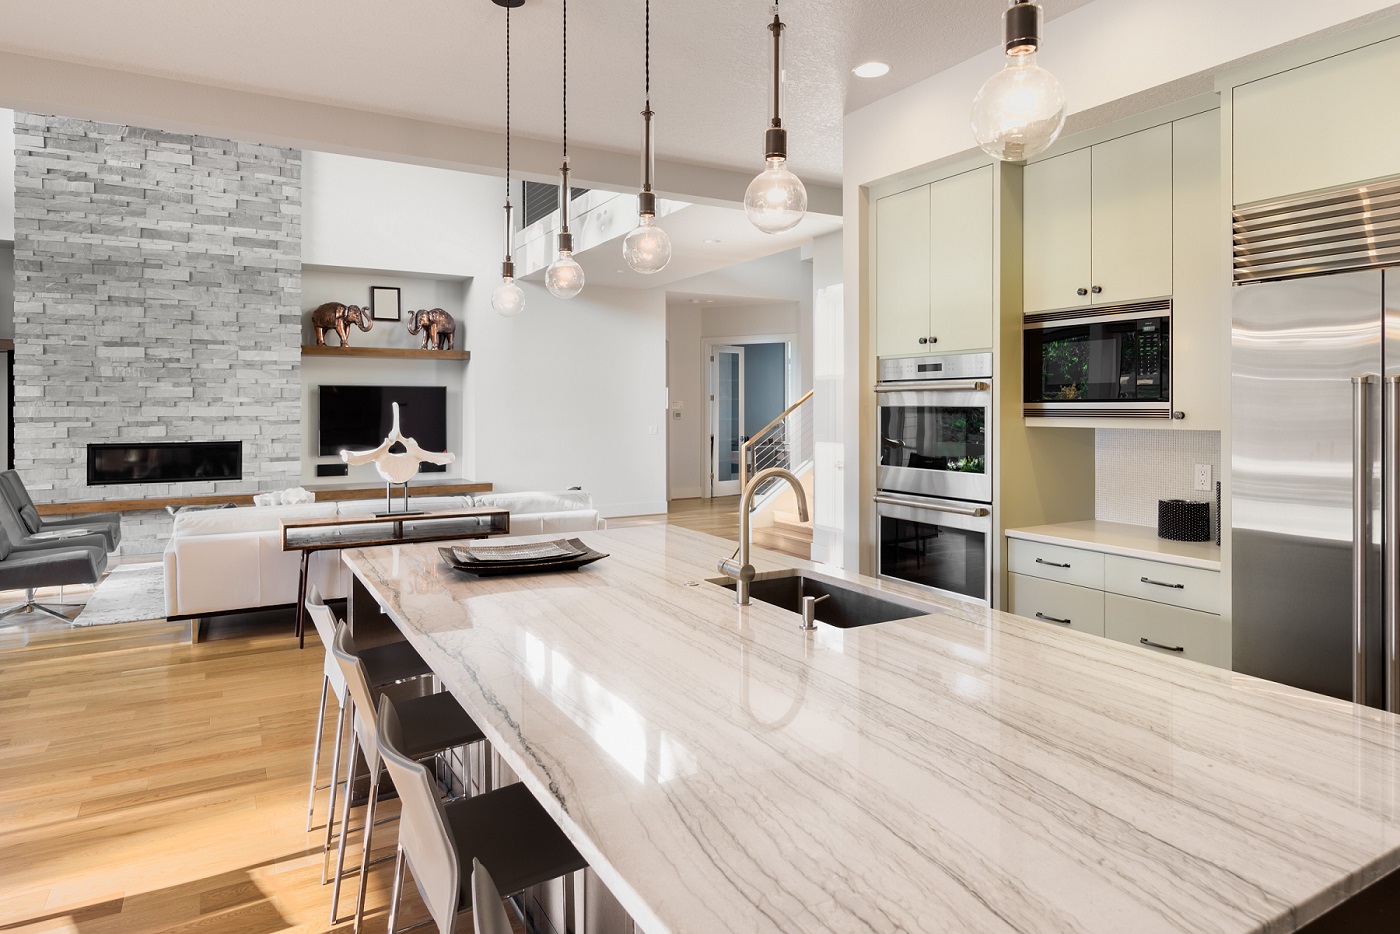 Freehold, NJ | Kitchen Design & Build Service | Best Kitchen Remodeling